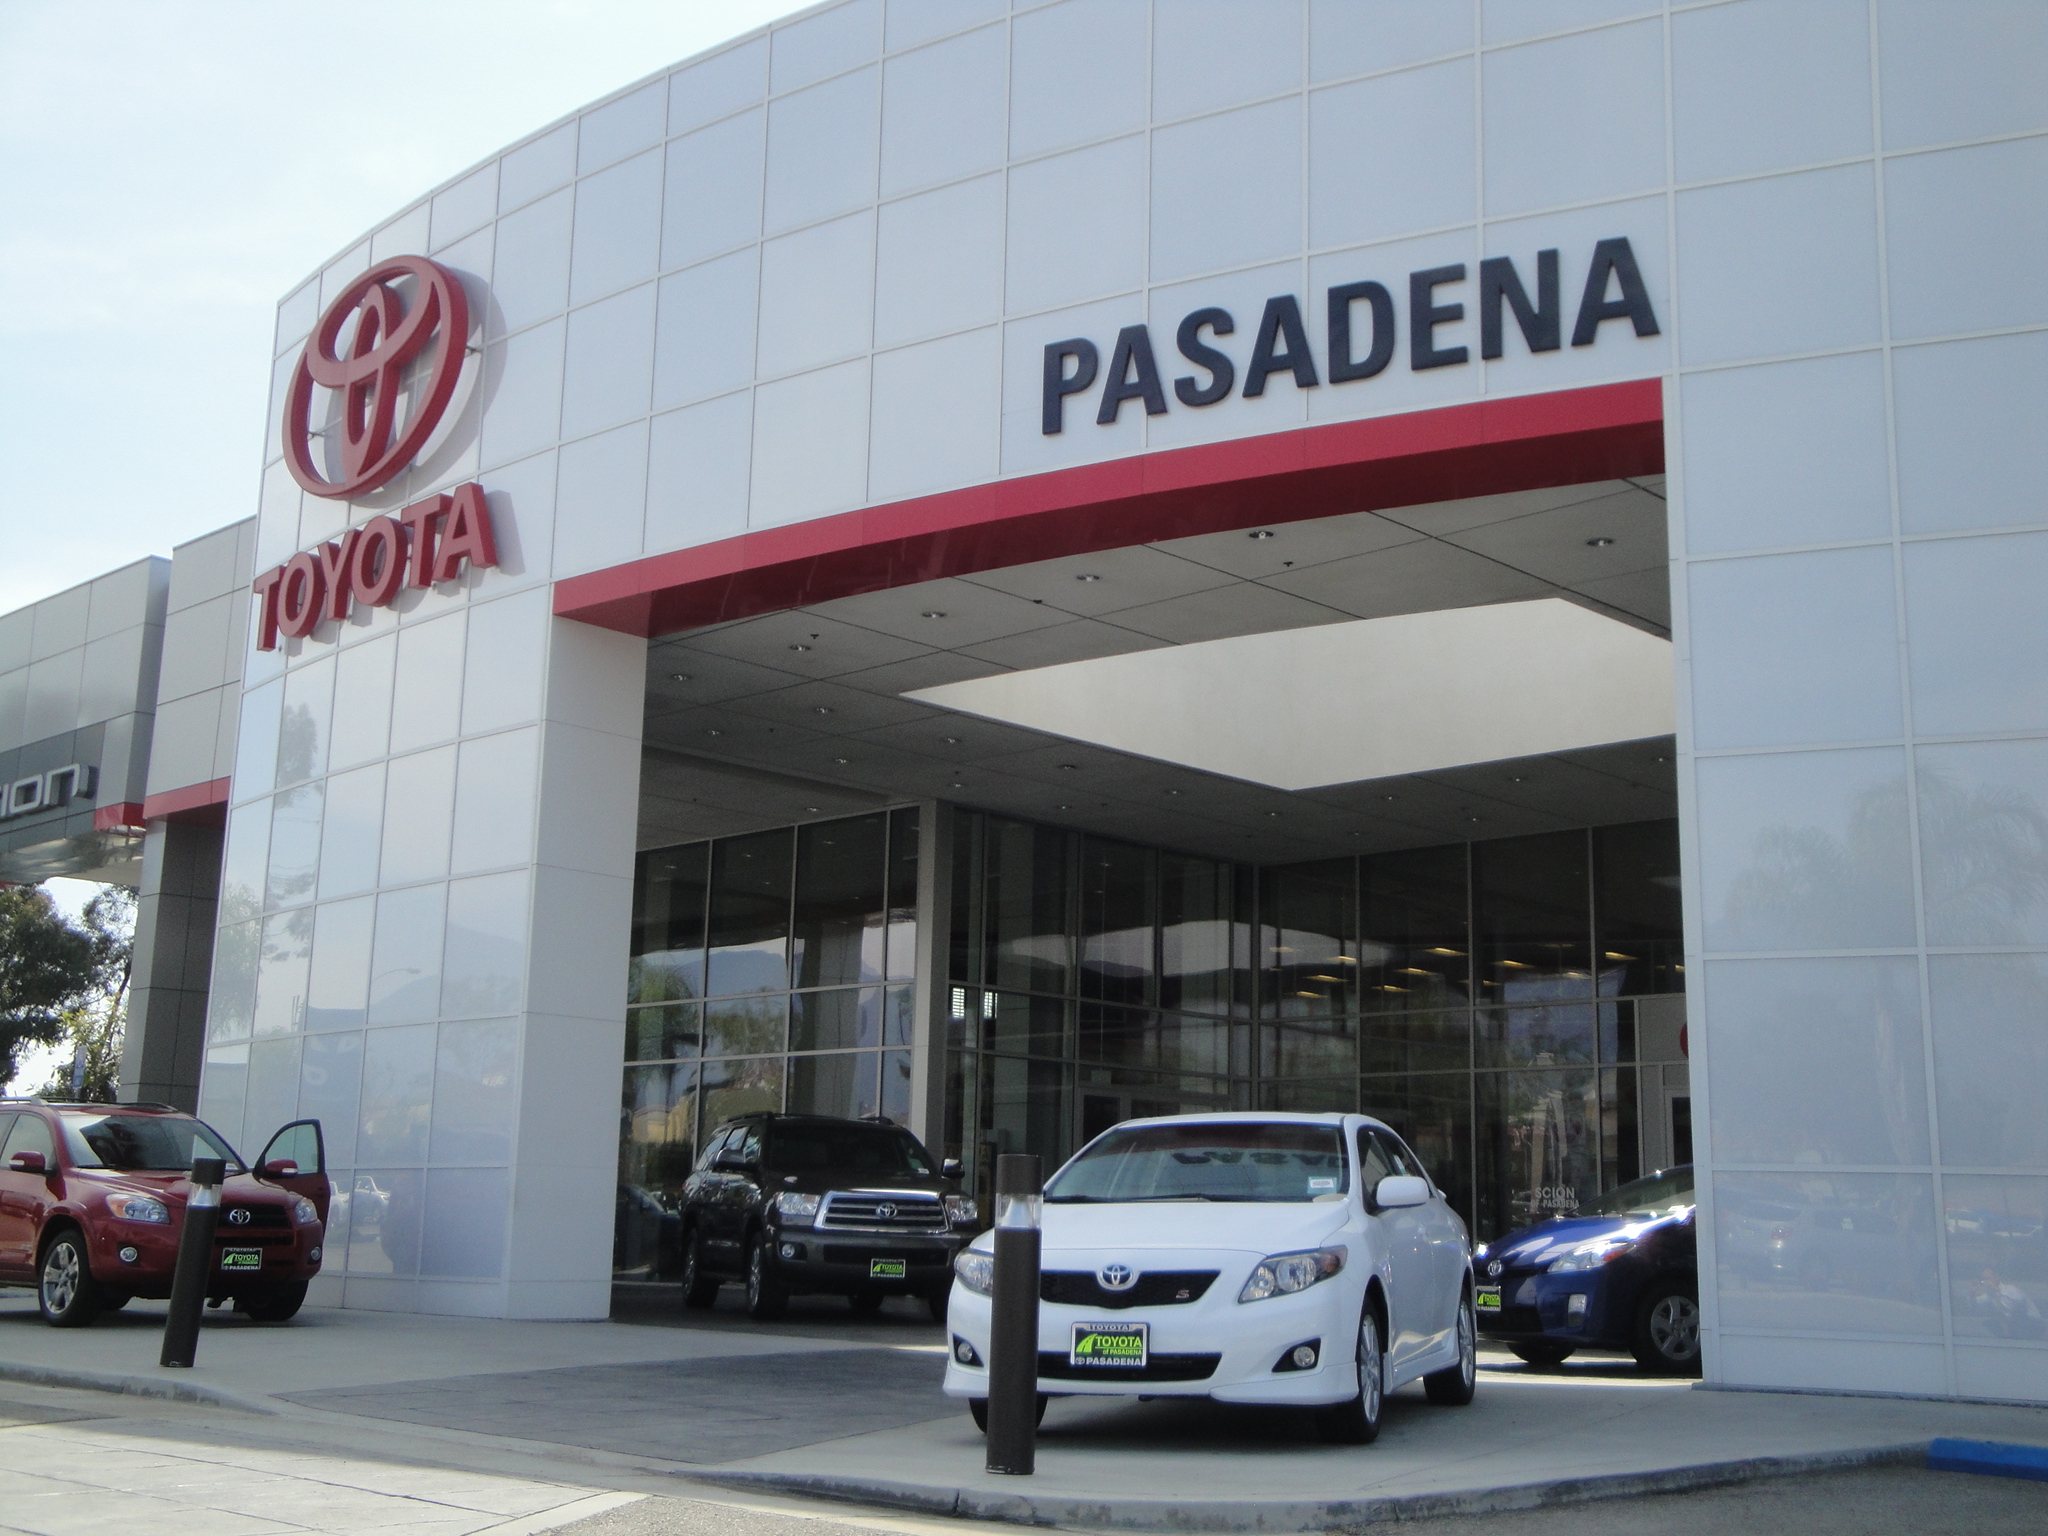 Toyota Pasadena Pasadena (626)795-9787